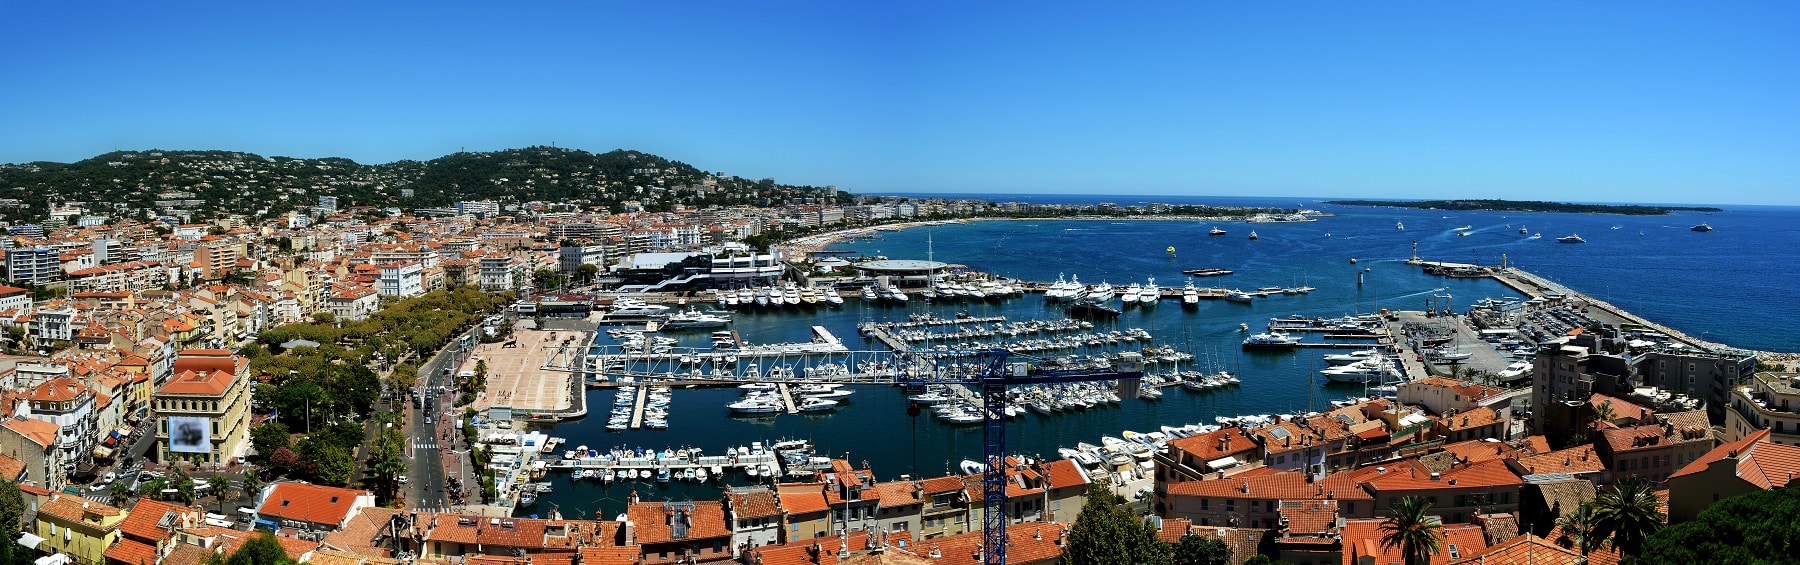 Tourisme à Cannes